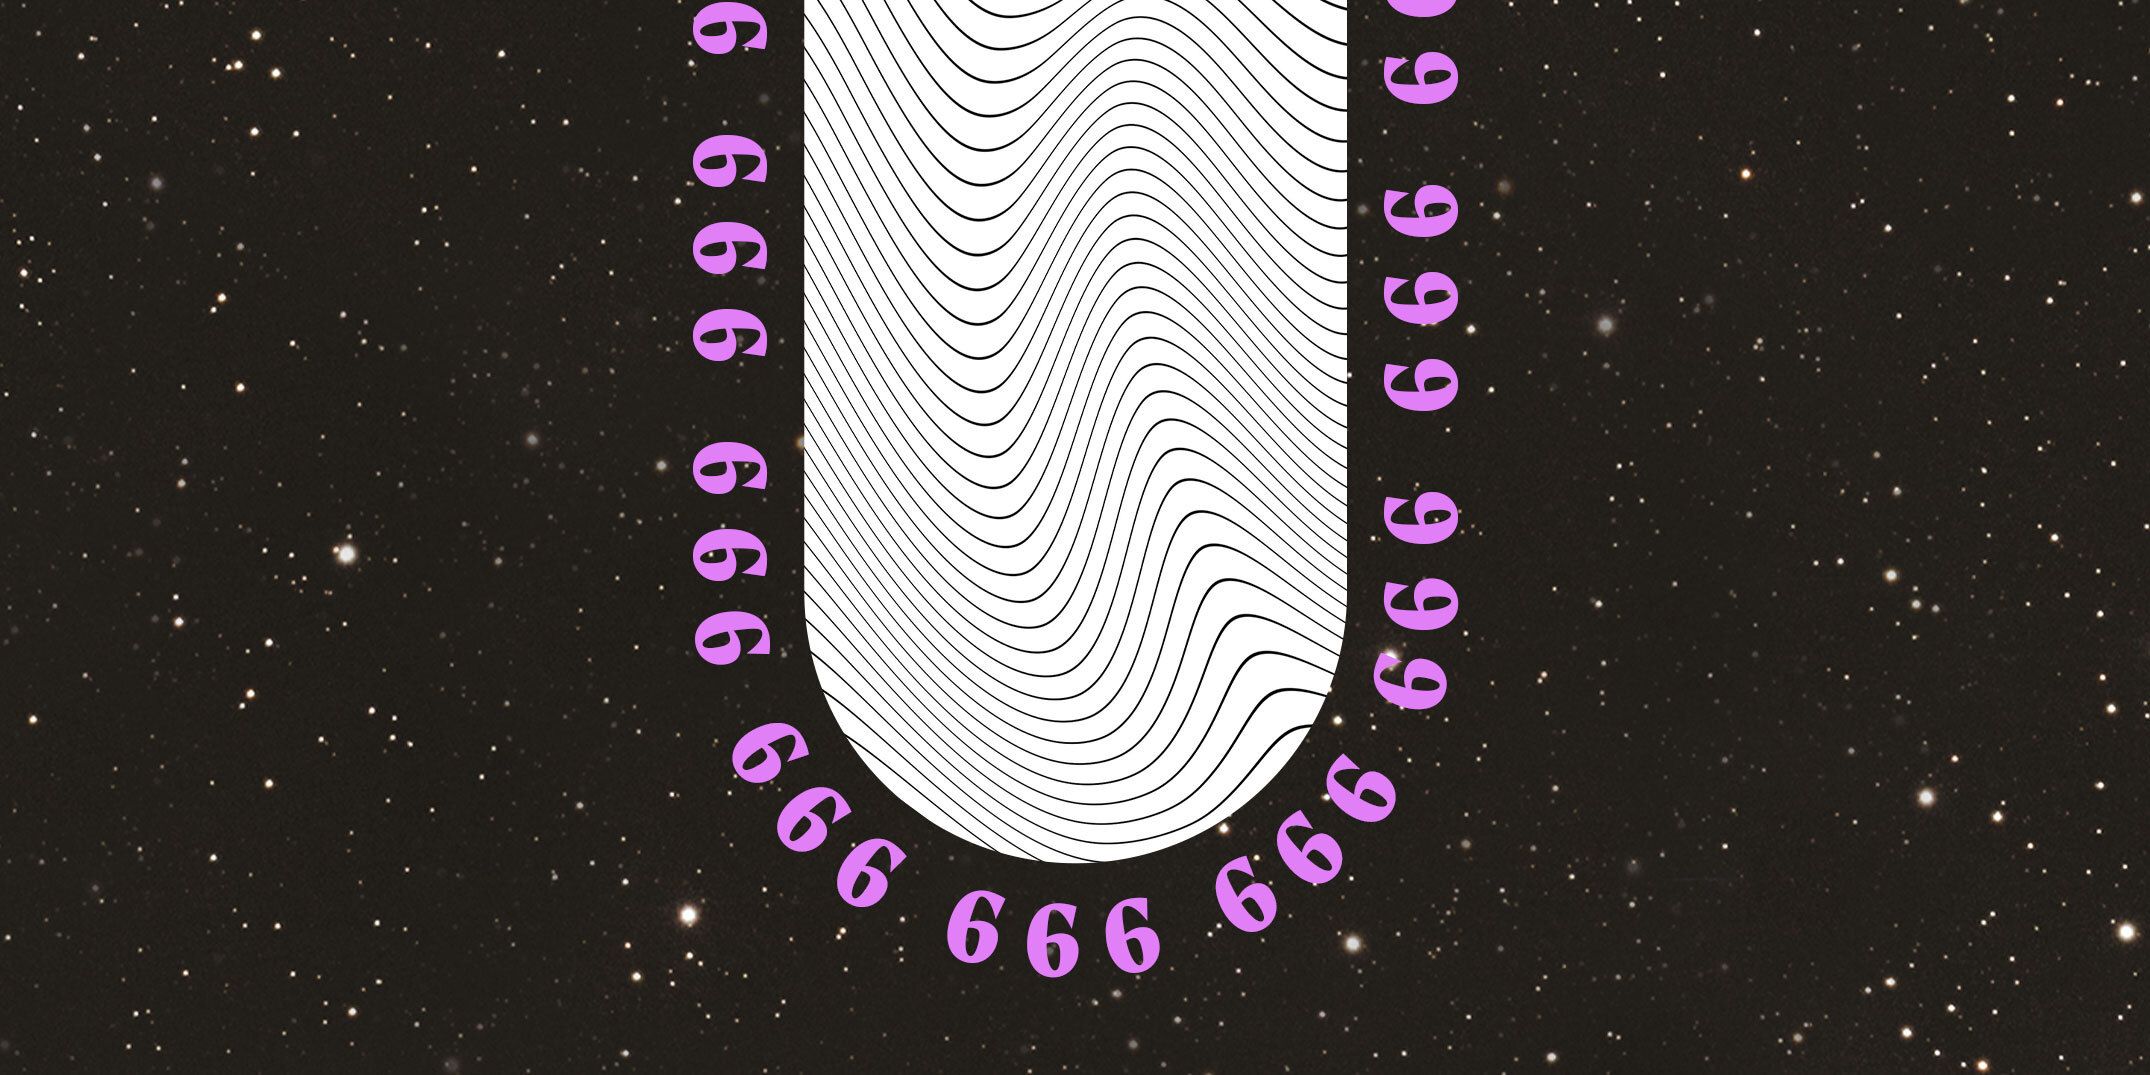 666: anđeosko značenje i numerologija